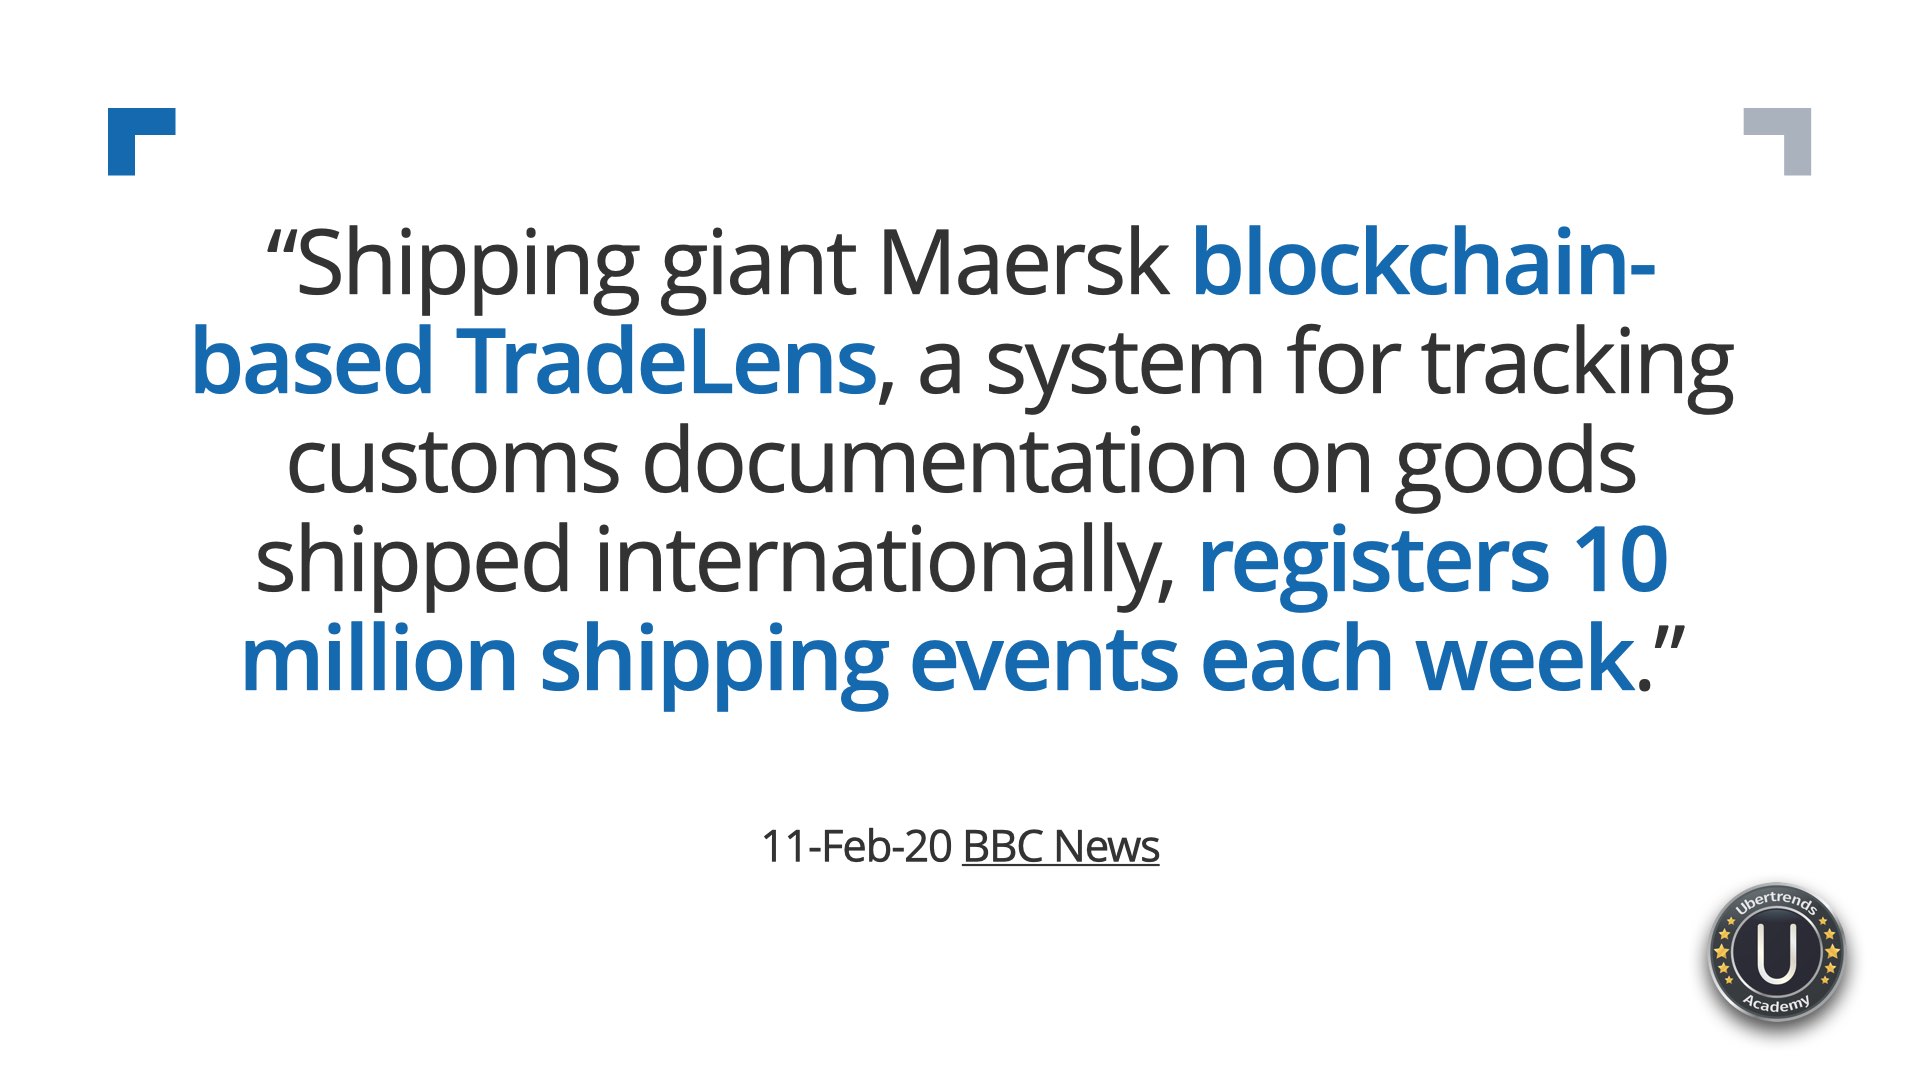 Maersk Blockchain TradeLens